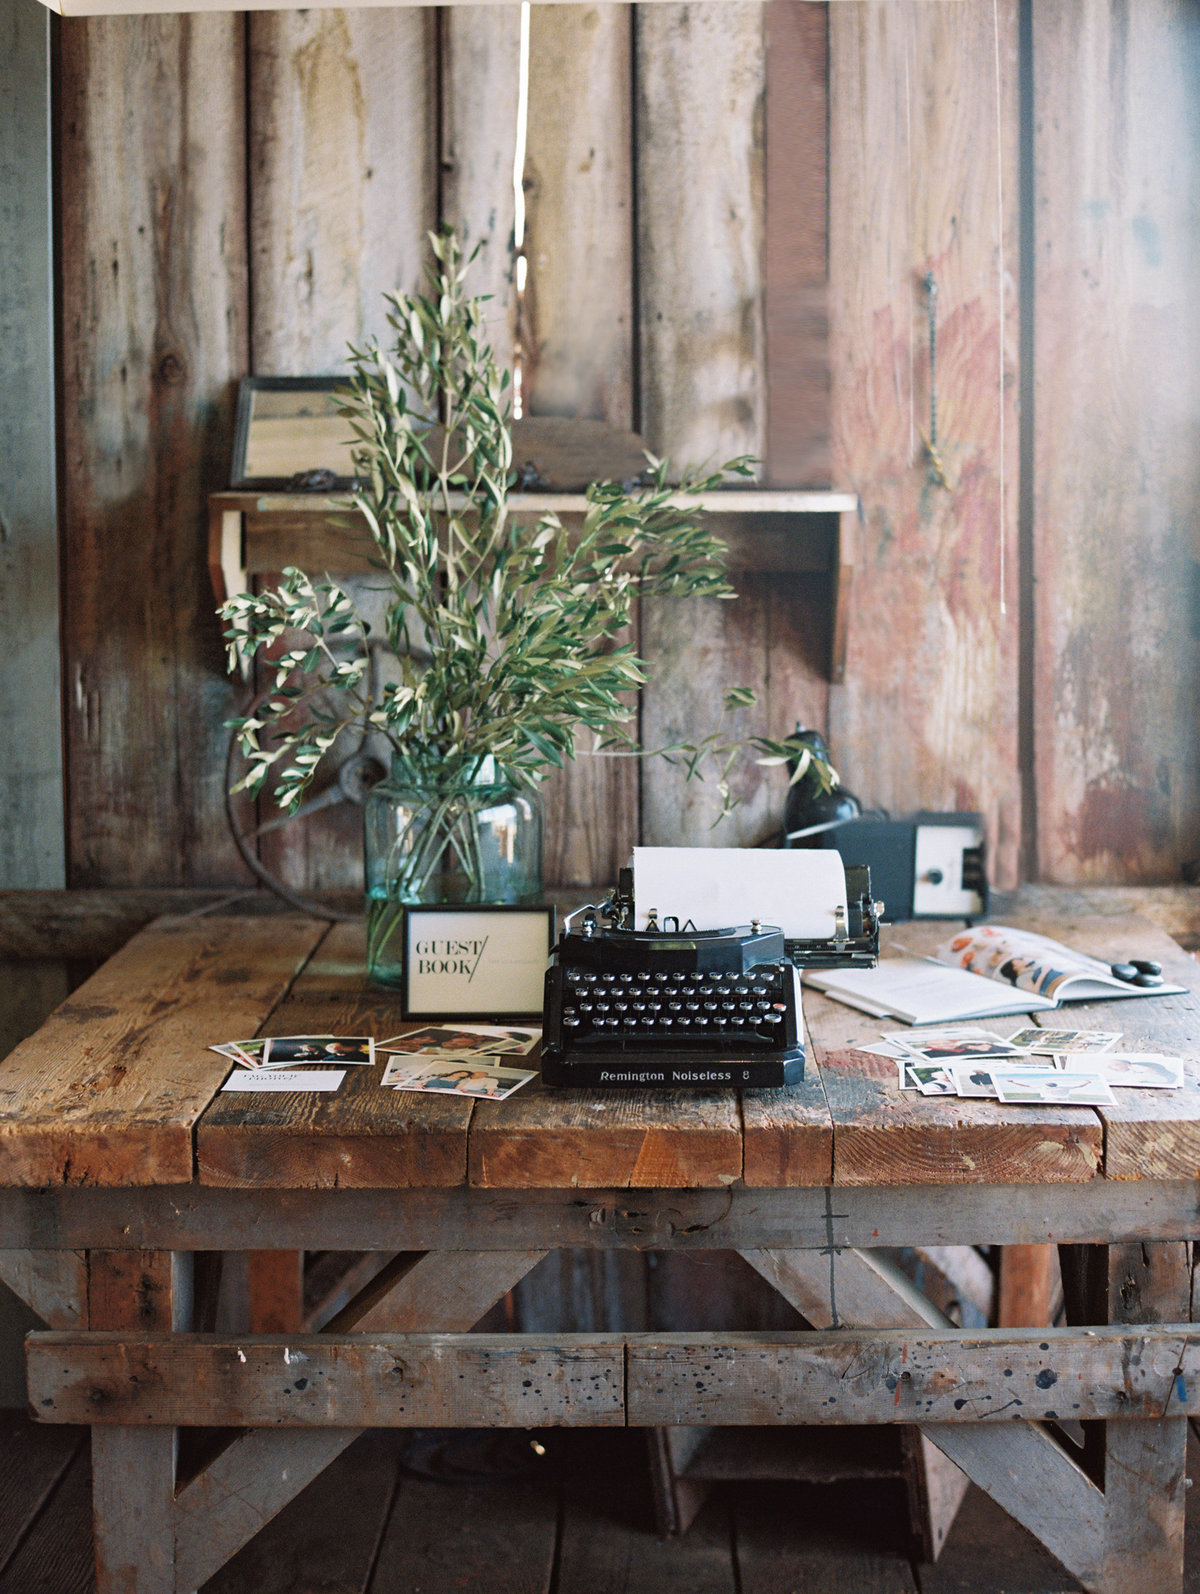 Unique guestbook wedding typewriter © Bonnie Sen Photography